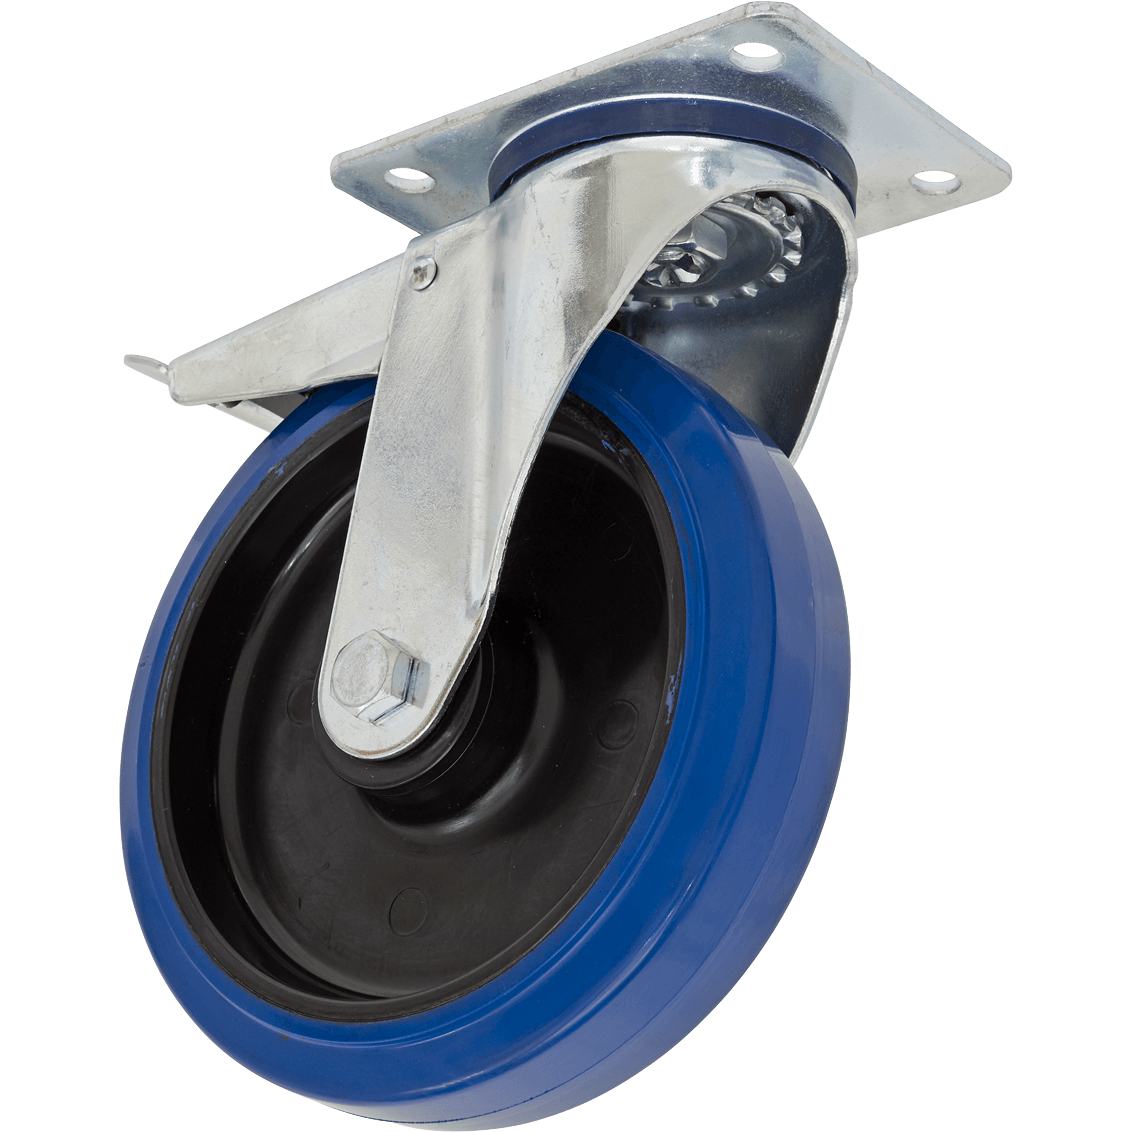 Sealey Heavy-Duty Blue Elastic Rubber Swivel Castor Wheel and Total Lock 160mm